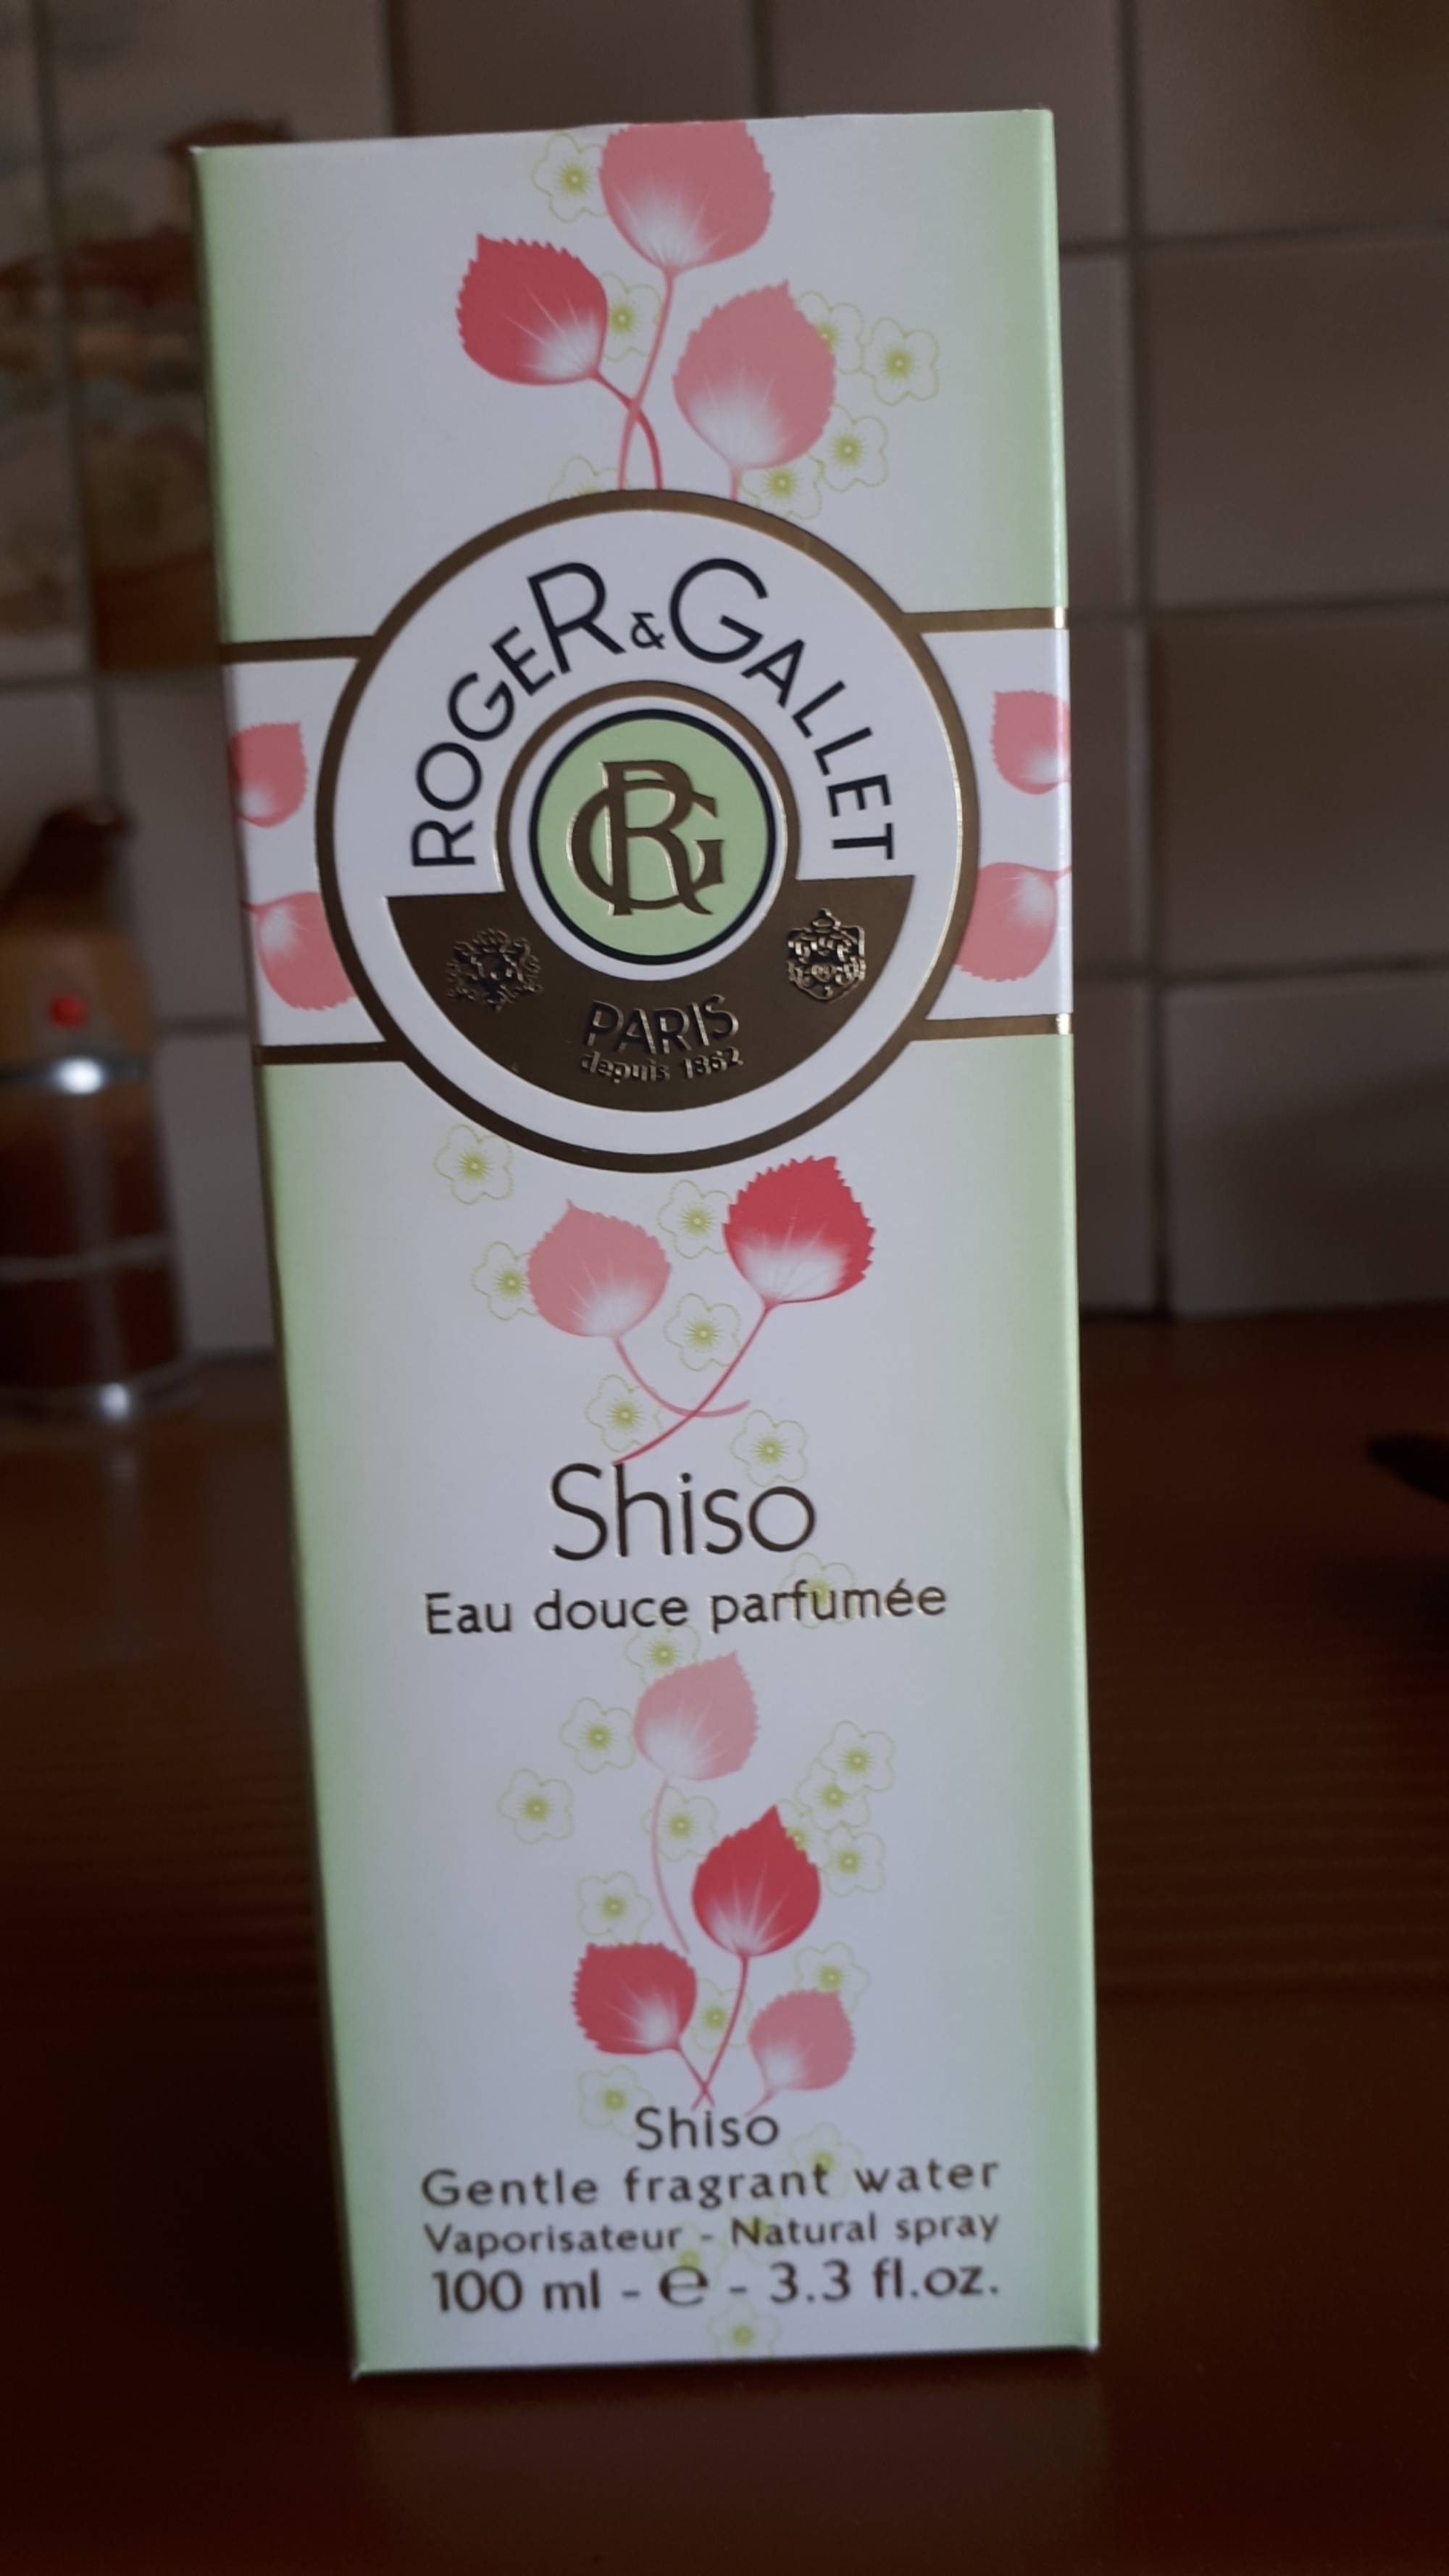 ROGER & GALLET - Shiso - Eau douce parfumée